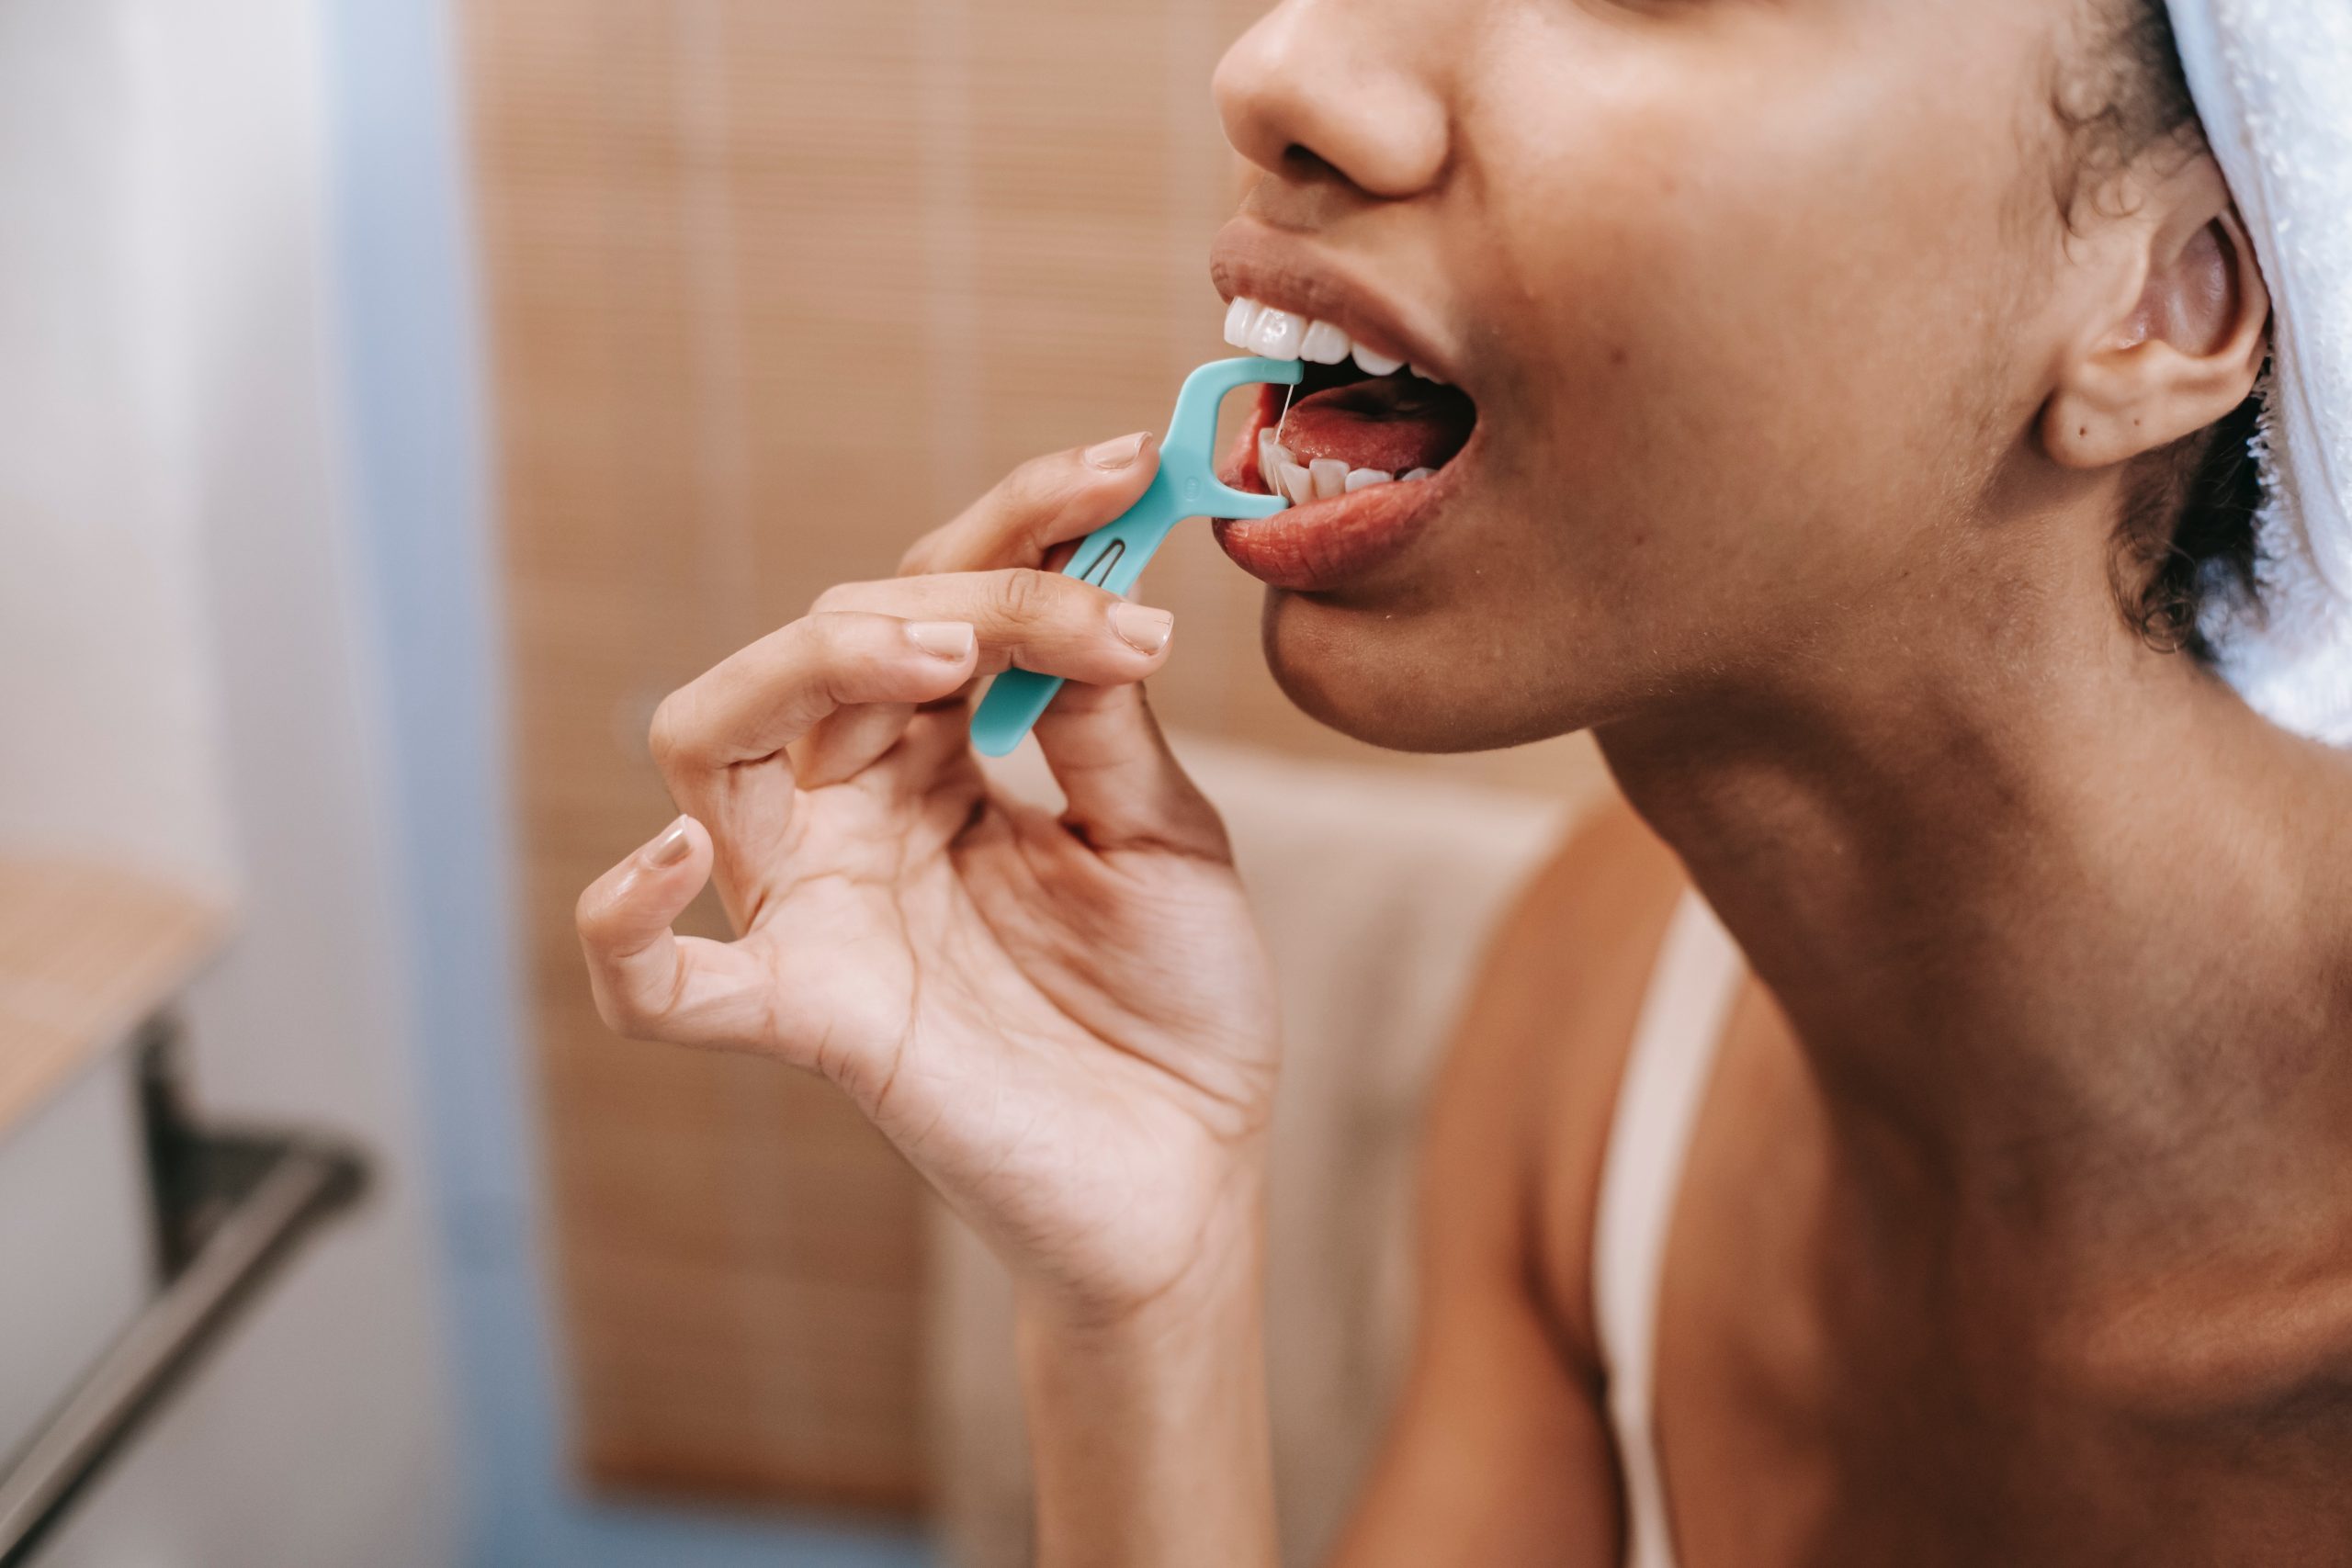 woman using flosser to clean teeth